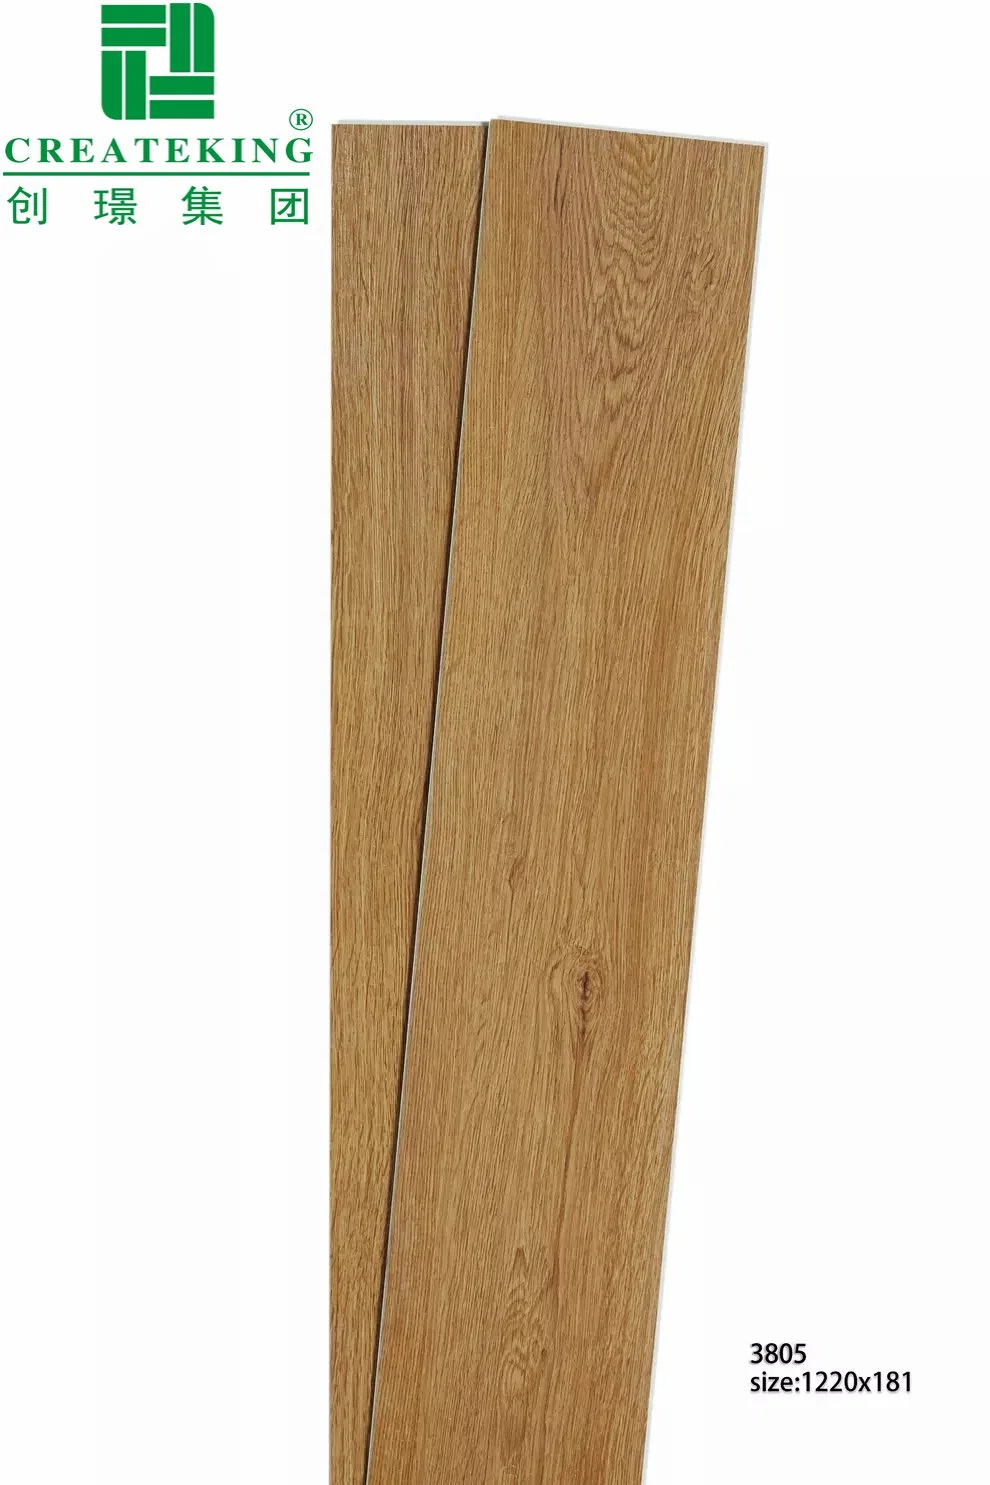 Oak/Hickory/Birch folheado de madeira Spc pisos de vinil revestimento UV escovado do Fio